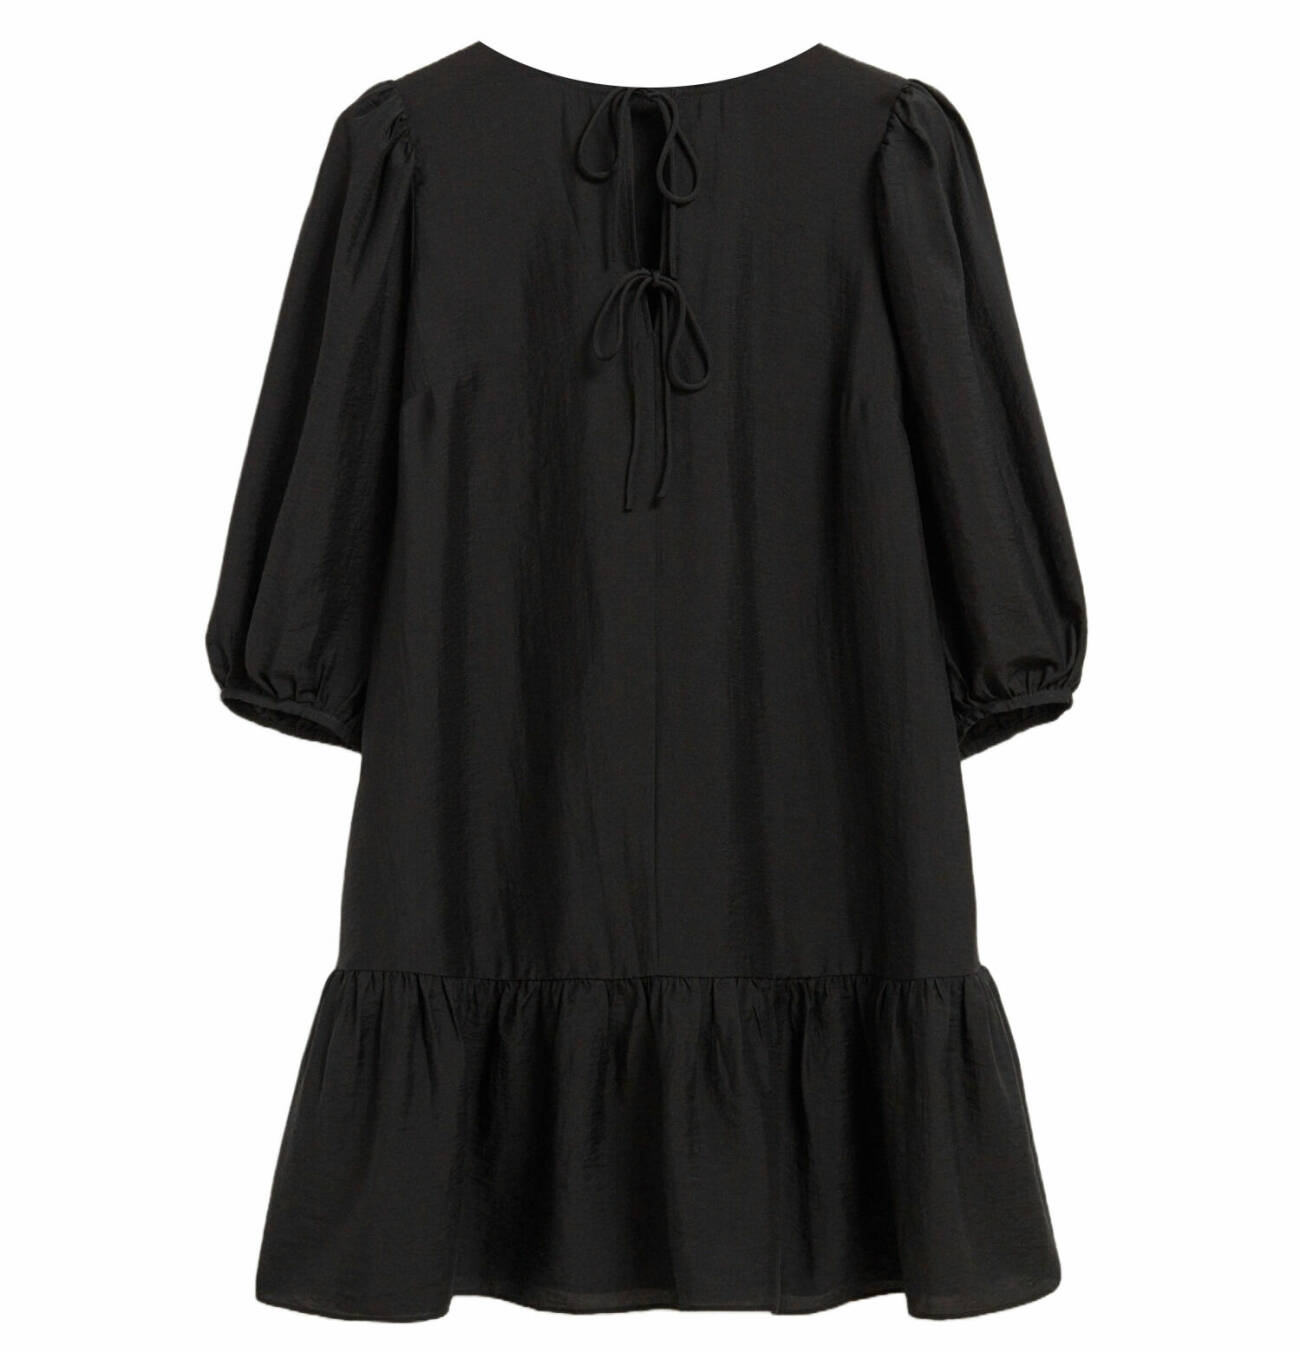 kort klänning i svart